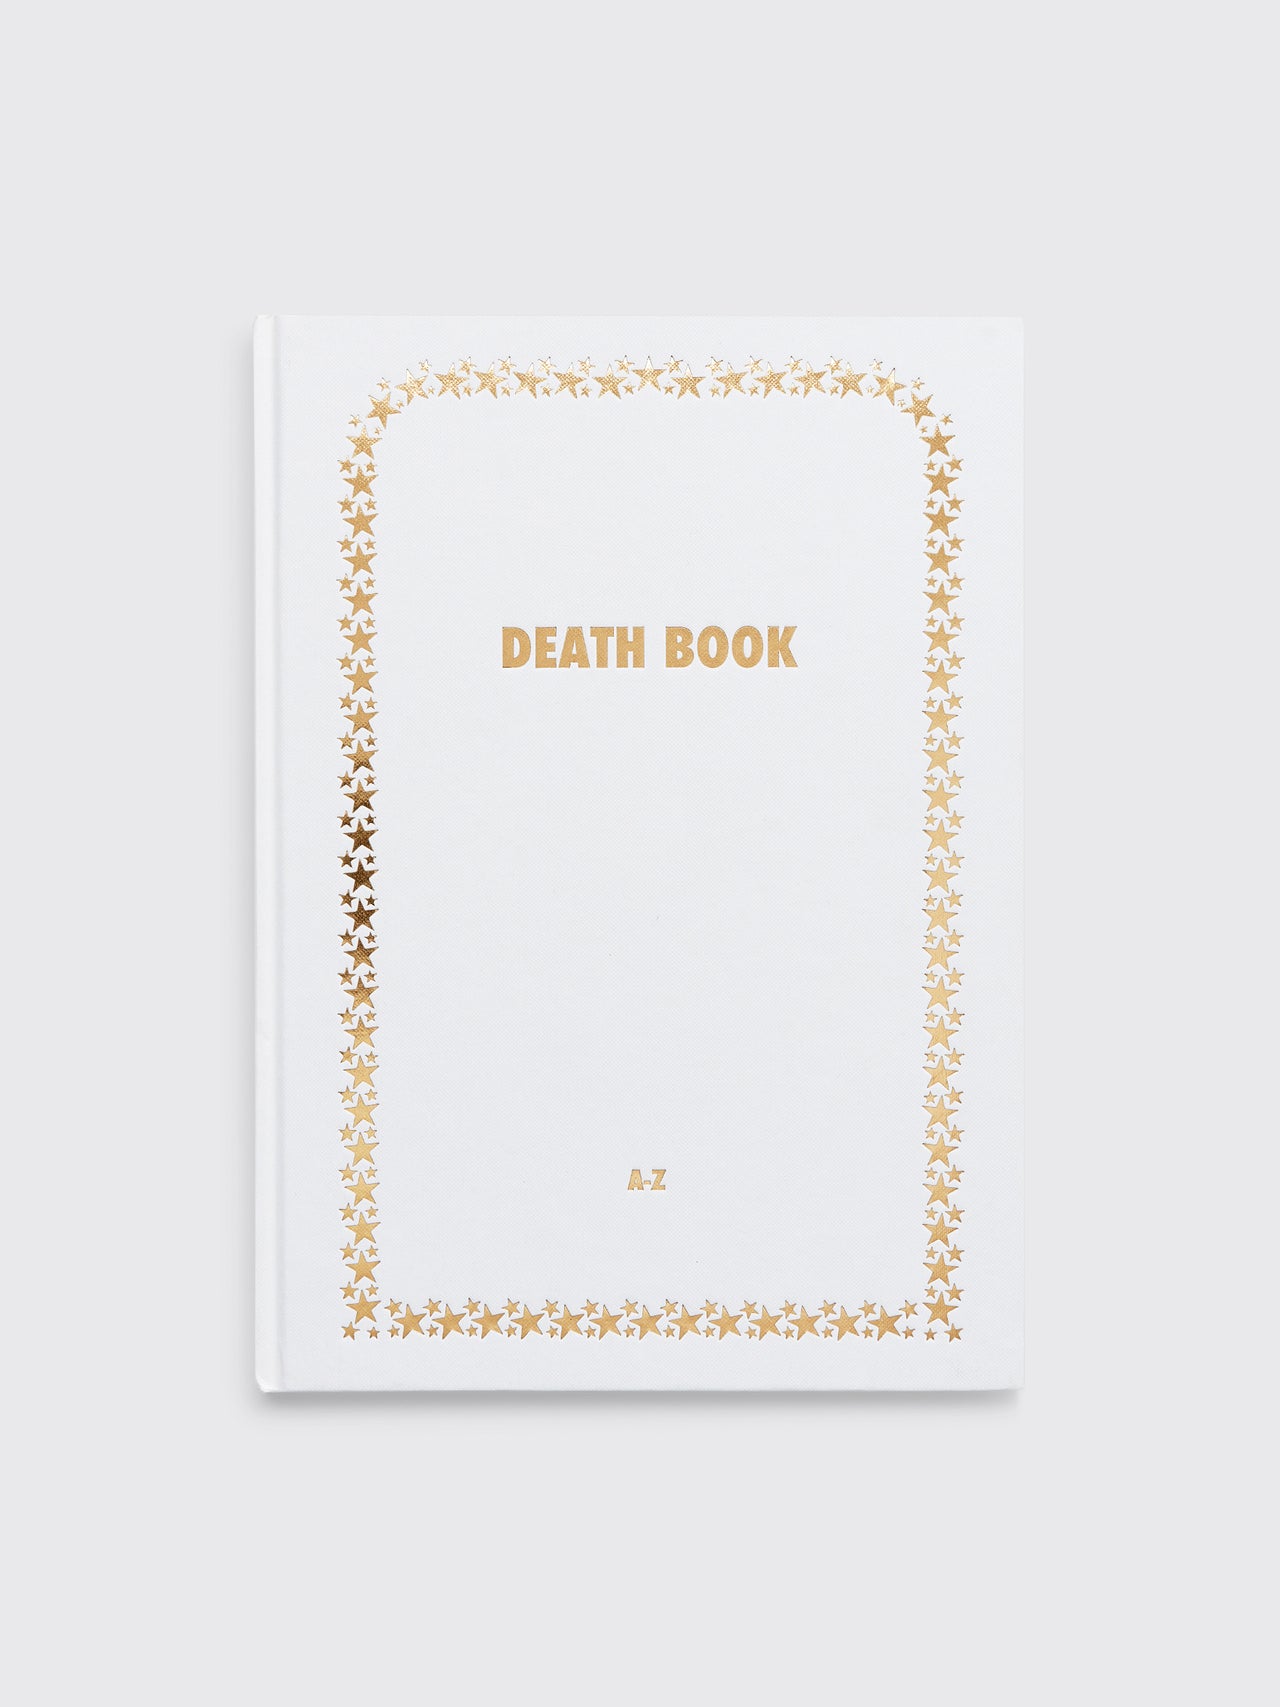 Death Book lll – Drawing One Last Breath